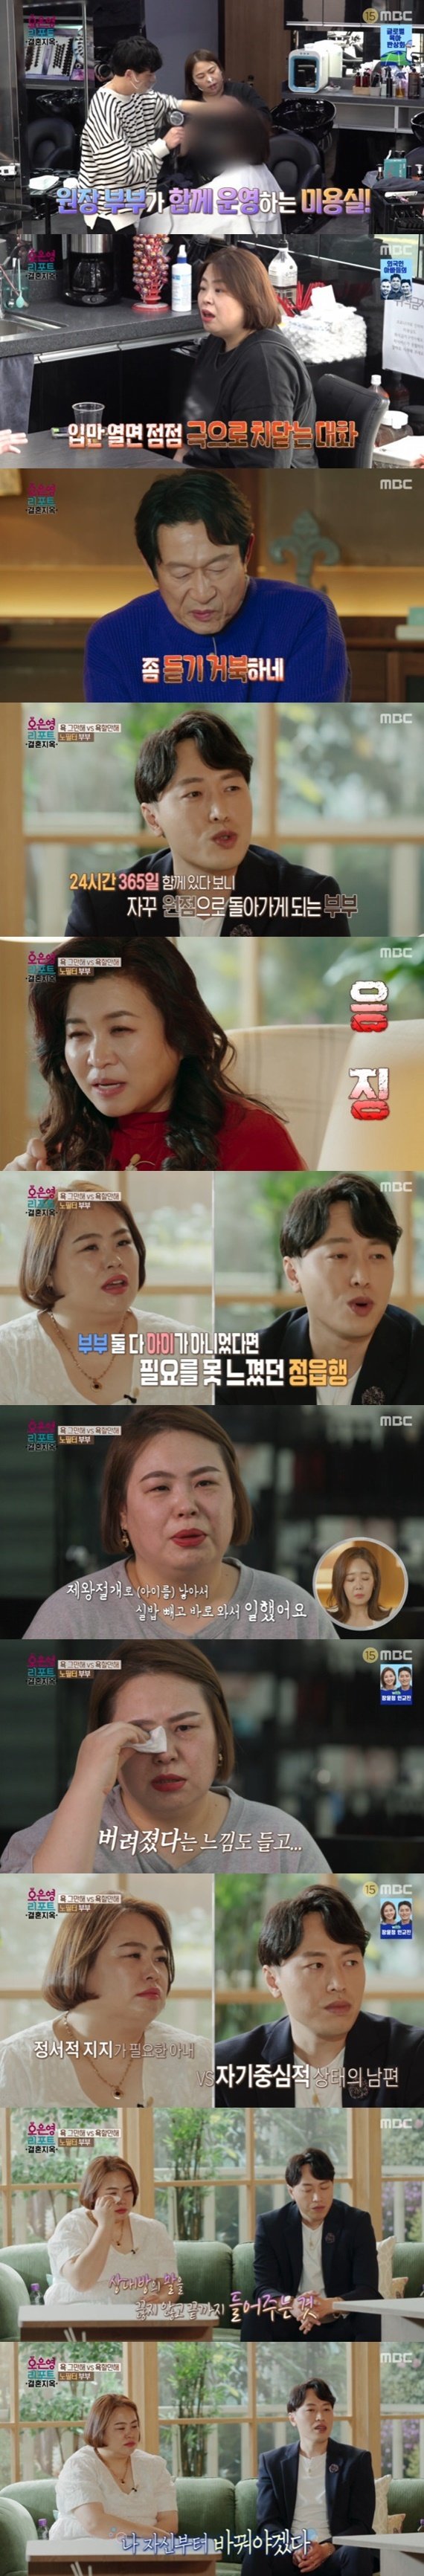 MBC ‘오은영 리포트 - 결혼 지옥’ © 뉴스1